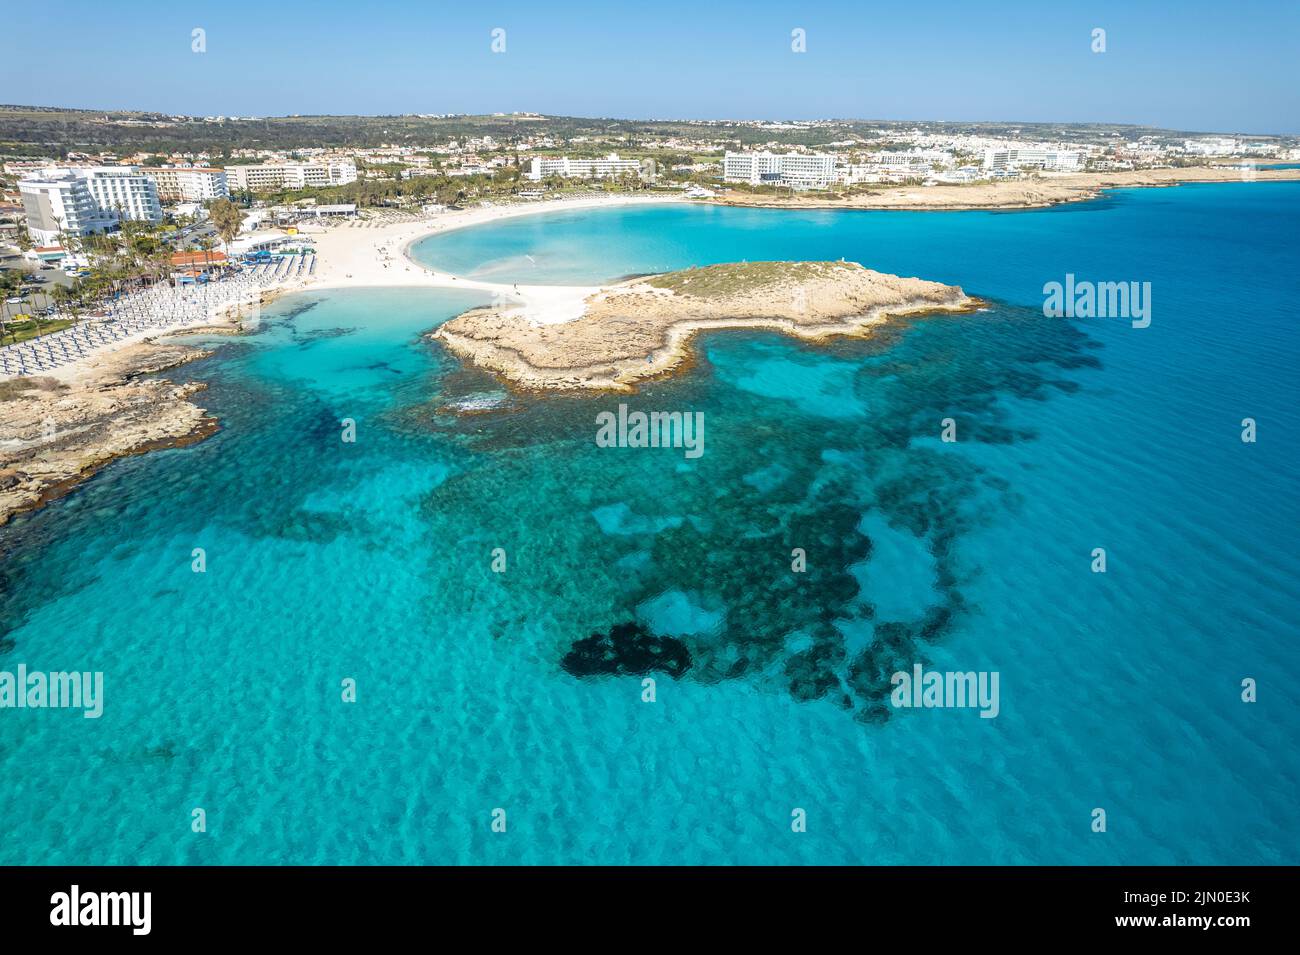 Der Strand Nissi Beach aus der Luft gesehen,  Zypern, Europa  | Aerial view of Nissi Beach in Ayia Napa, Cyprus, Europe Stock Photo